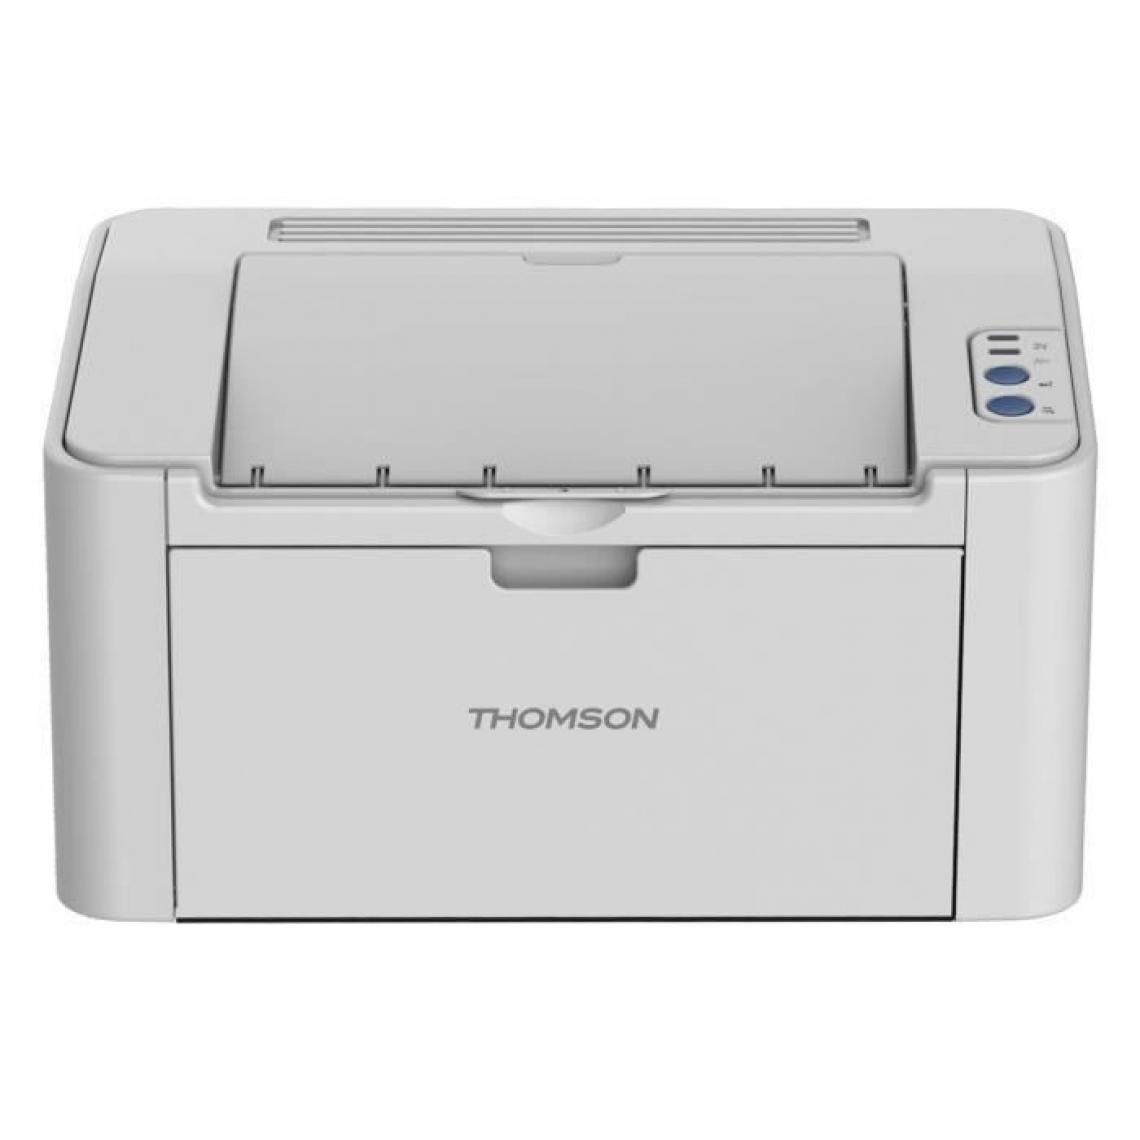 Thomson - THOMSON TH-2500 Imprimante laser monochrome DPI 1200*1200 - 1600 pages - 8000 pages - 150 pages - WIFI - Imprimante Jet d'encre